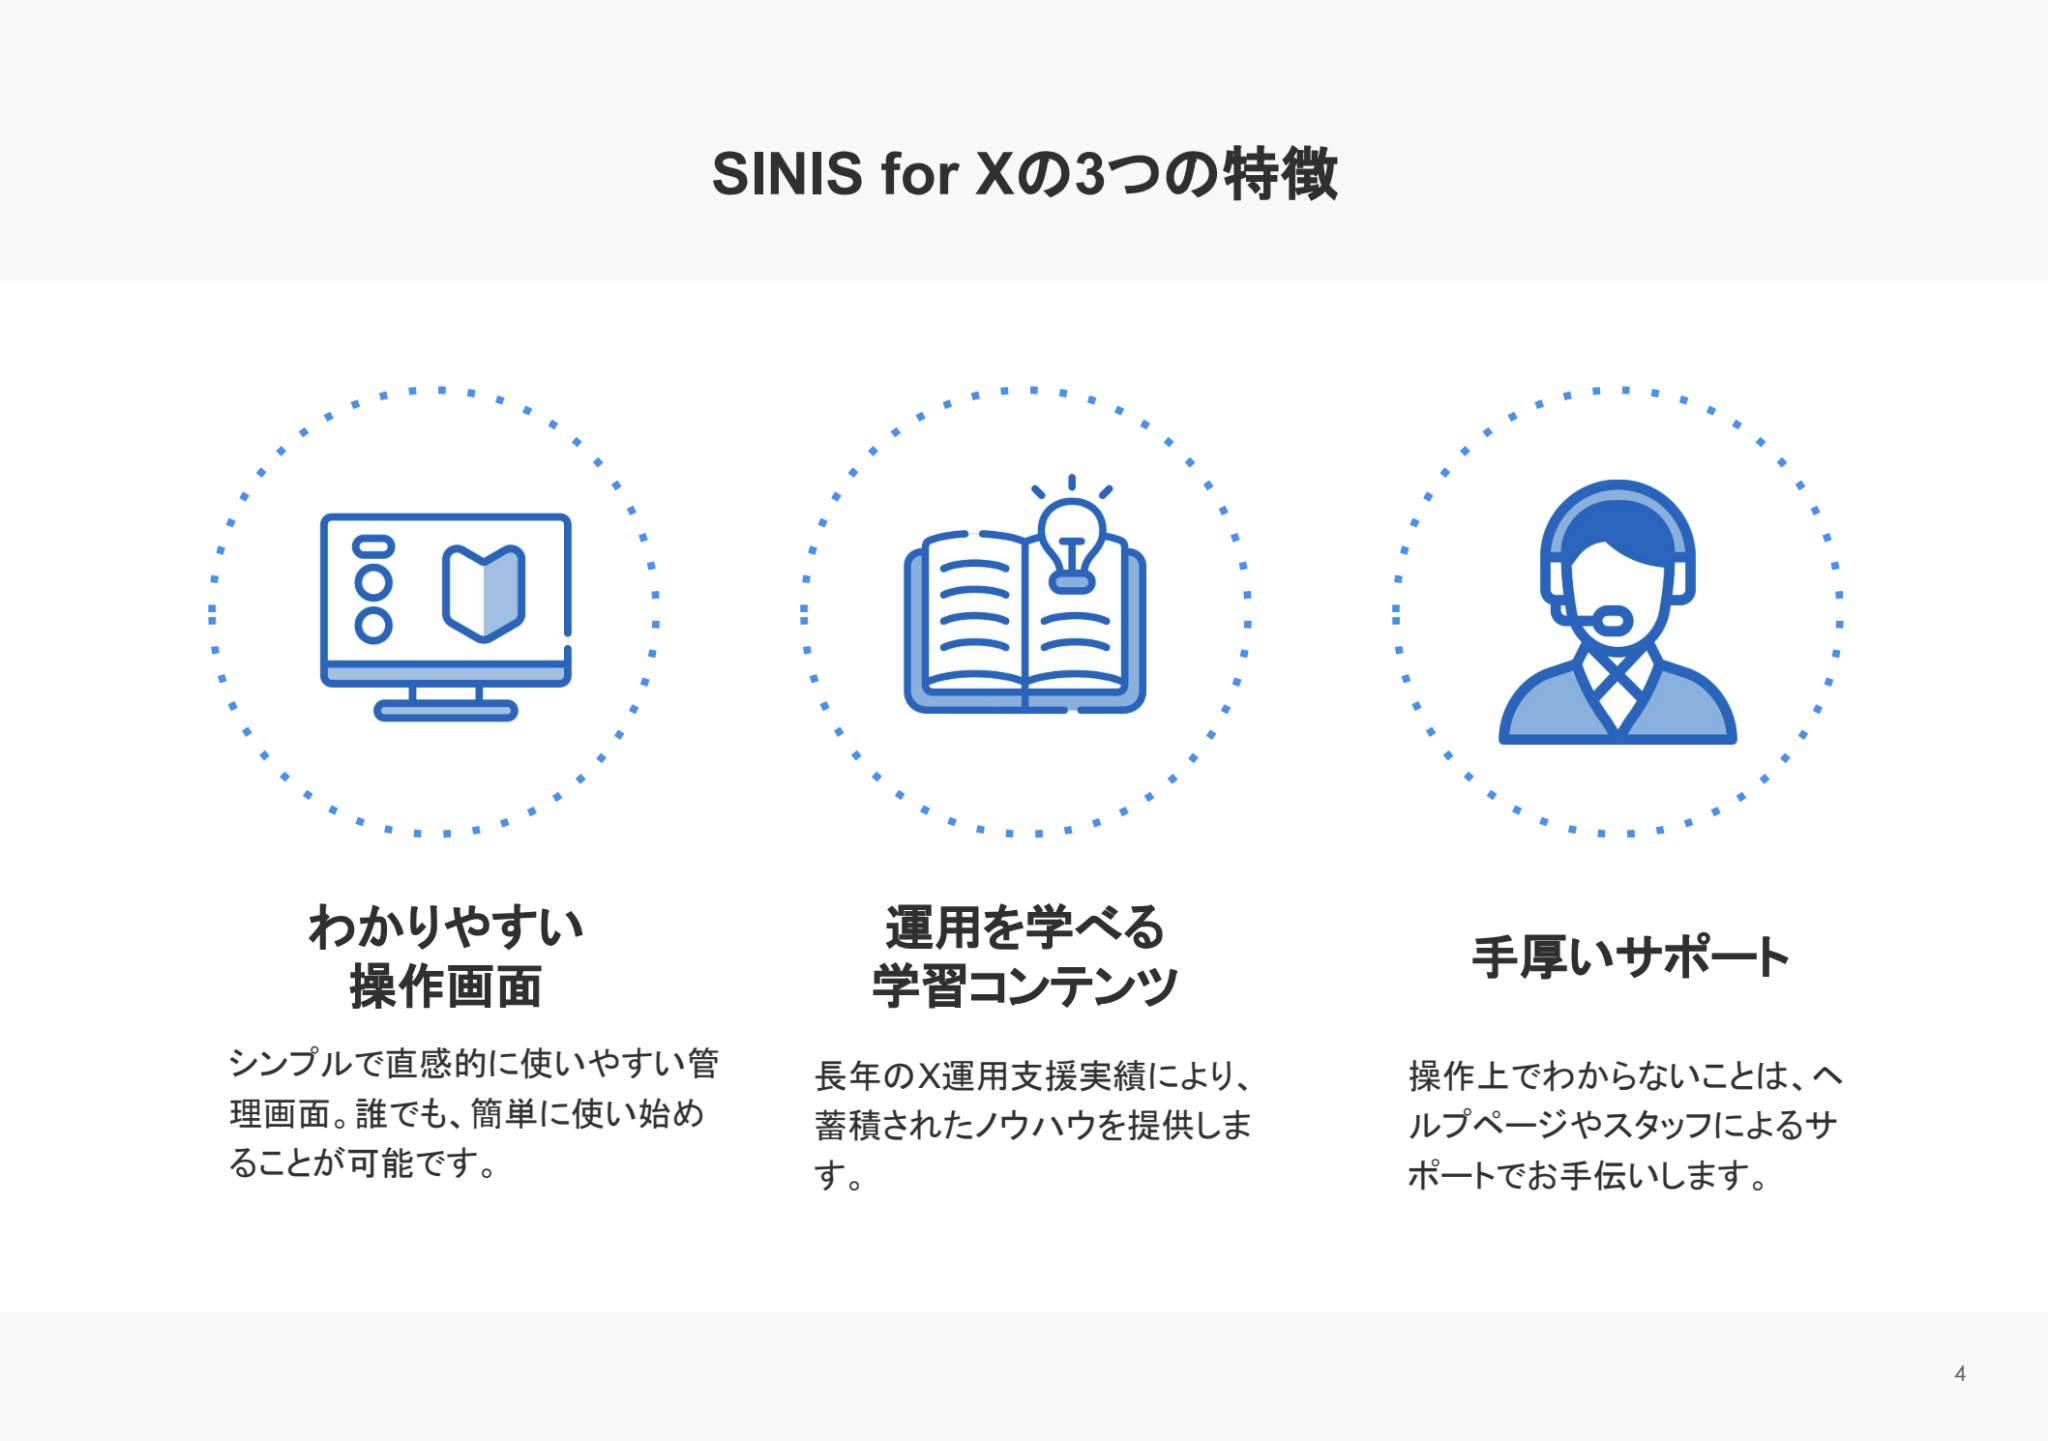 SINIS for Xの3つの特徴
分かりやすい操作画面
運用を学べる学習コンテンツ
手厚いサポート